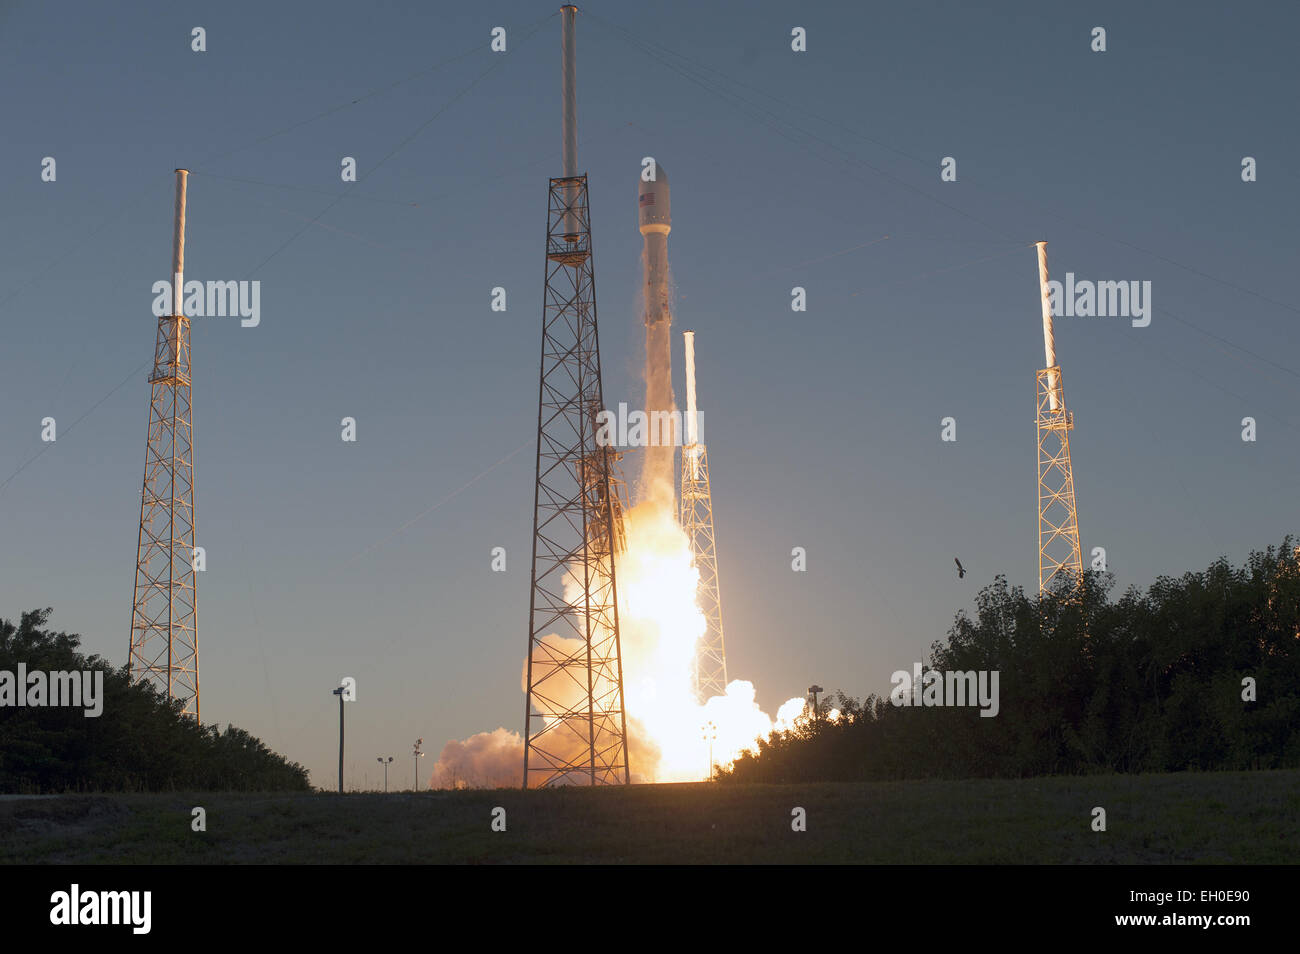 El cohete SpaceX Falcon 9 llevando el NOAA's Espacio Profundo Observatorio del clima espacial, o DSCOVR, despega desde el complejo de lanzamiento espacial 40 de la estación de la Fuerza Aérea de Cabo Cañaveral en Florida a las 6:03 p.m. EST. DSCOVR es una colaboración entre la NOAA, la NASA y la Fuerza Aérea de los Estados Unidos, y mantendrá la nación del viento solar en tiempo real las capacidades de supervisión Foto de stock